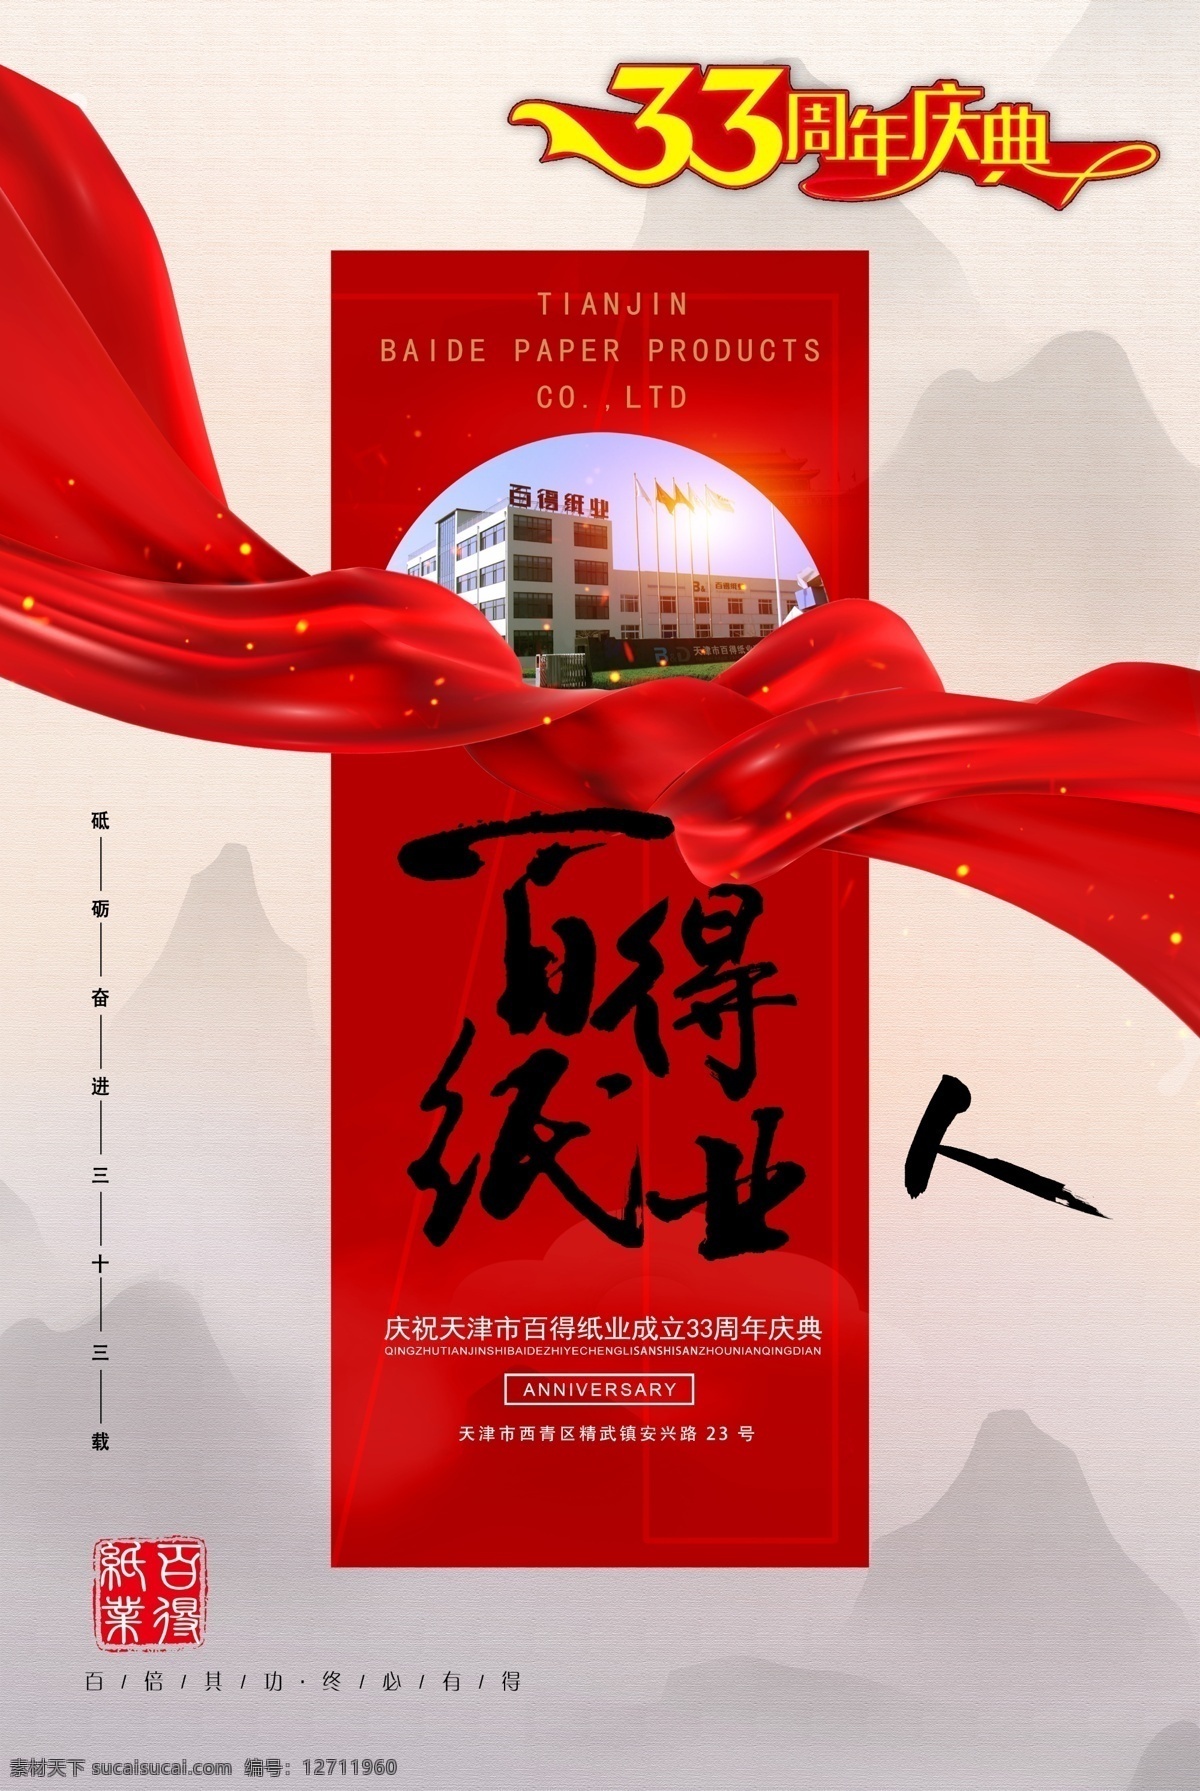 周年庆典 33周年 红绸子 红色飘带 艺术章 云海 山 展板模板